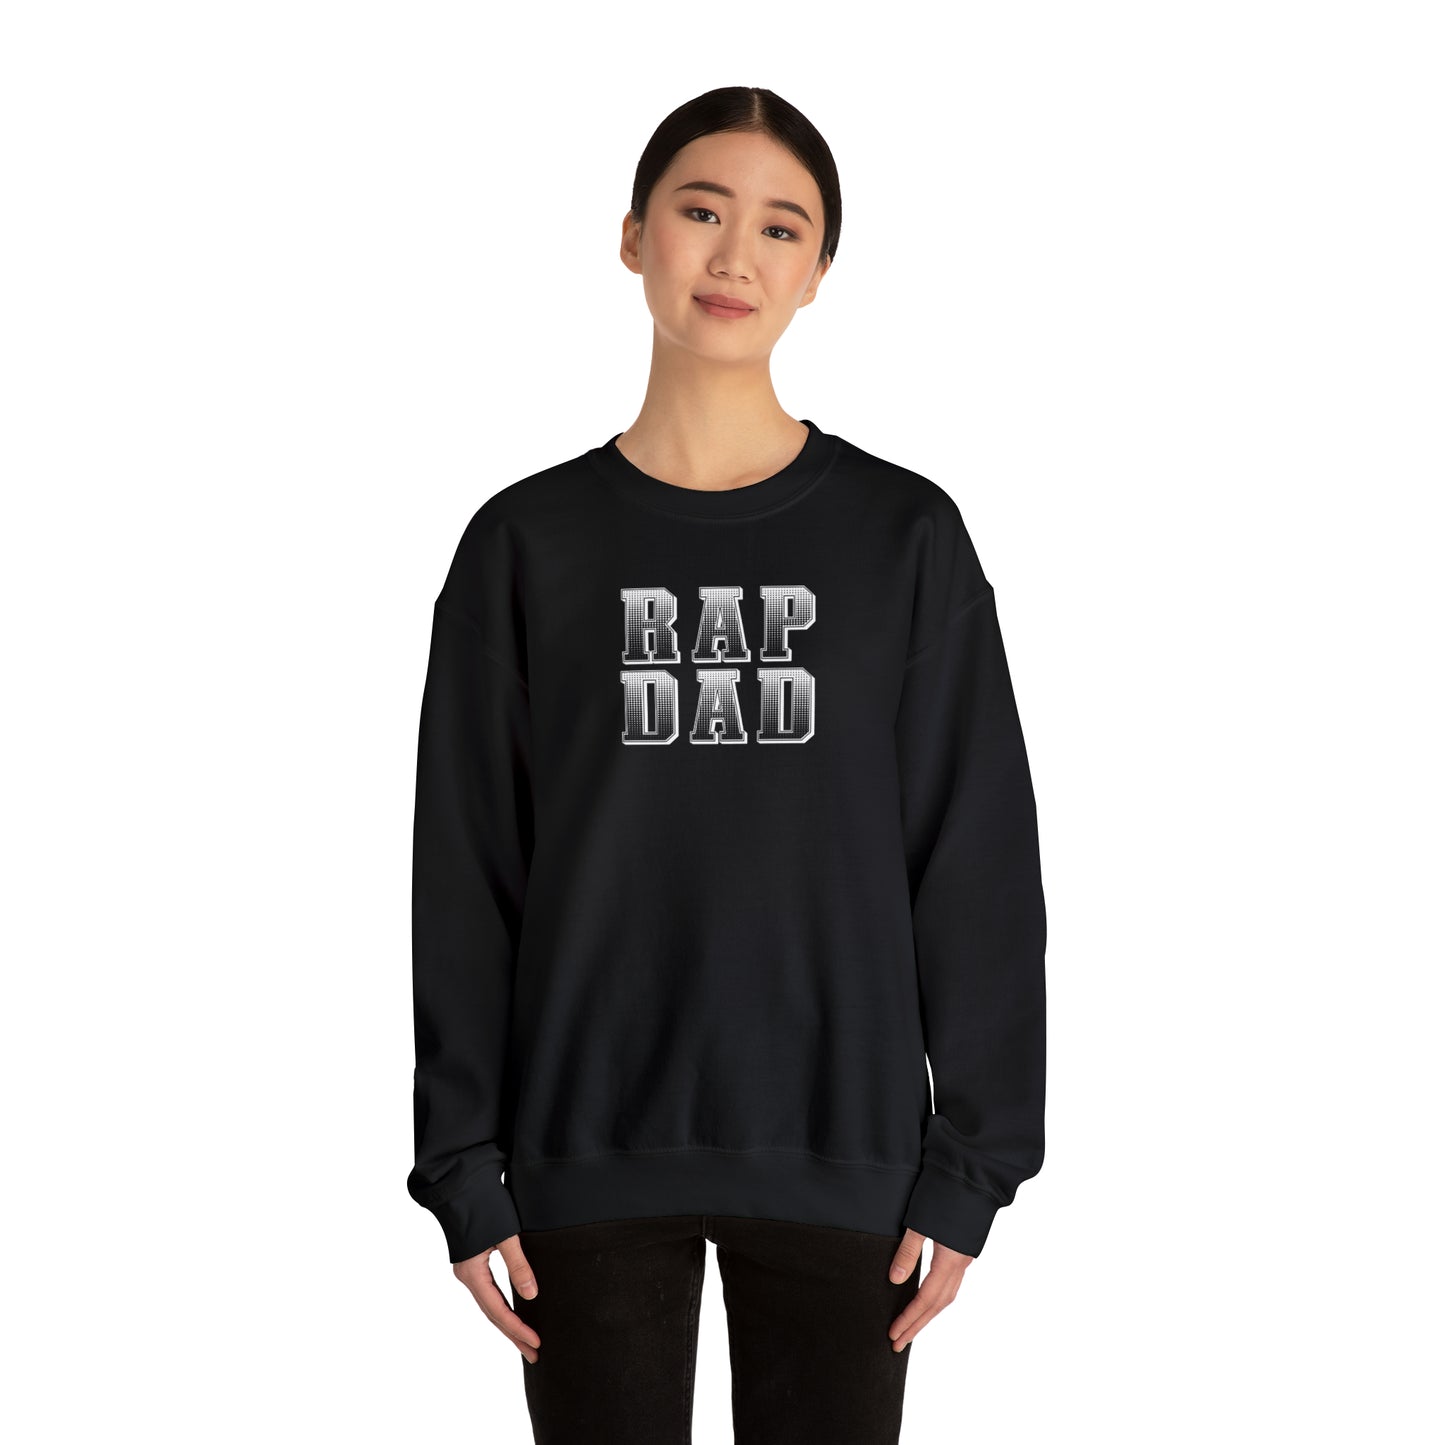 Rap Dad Crewneck Sweatshirt - Great gift for Dad